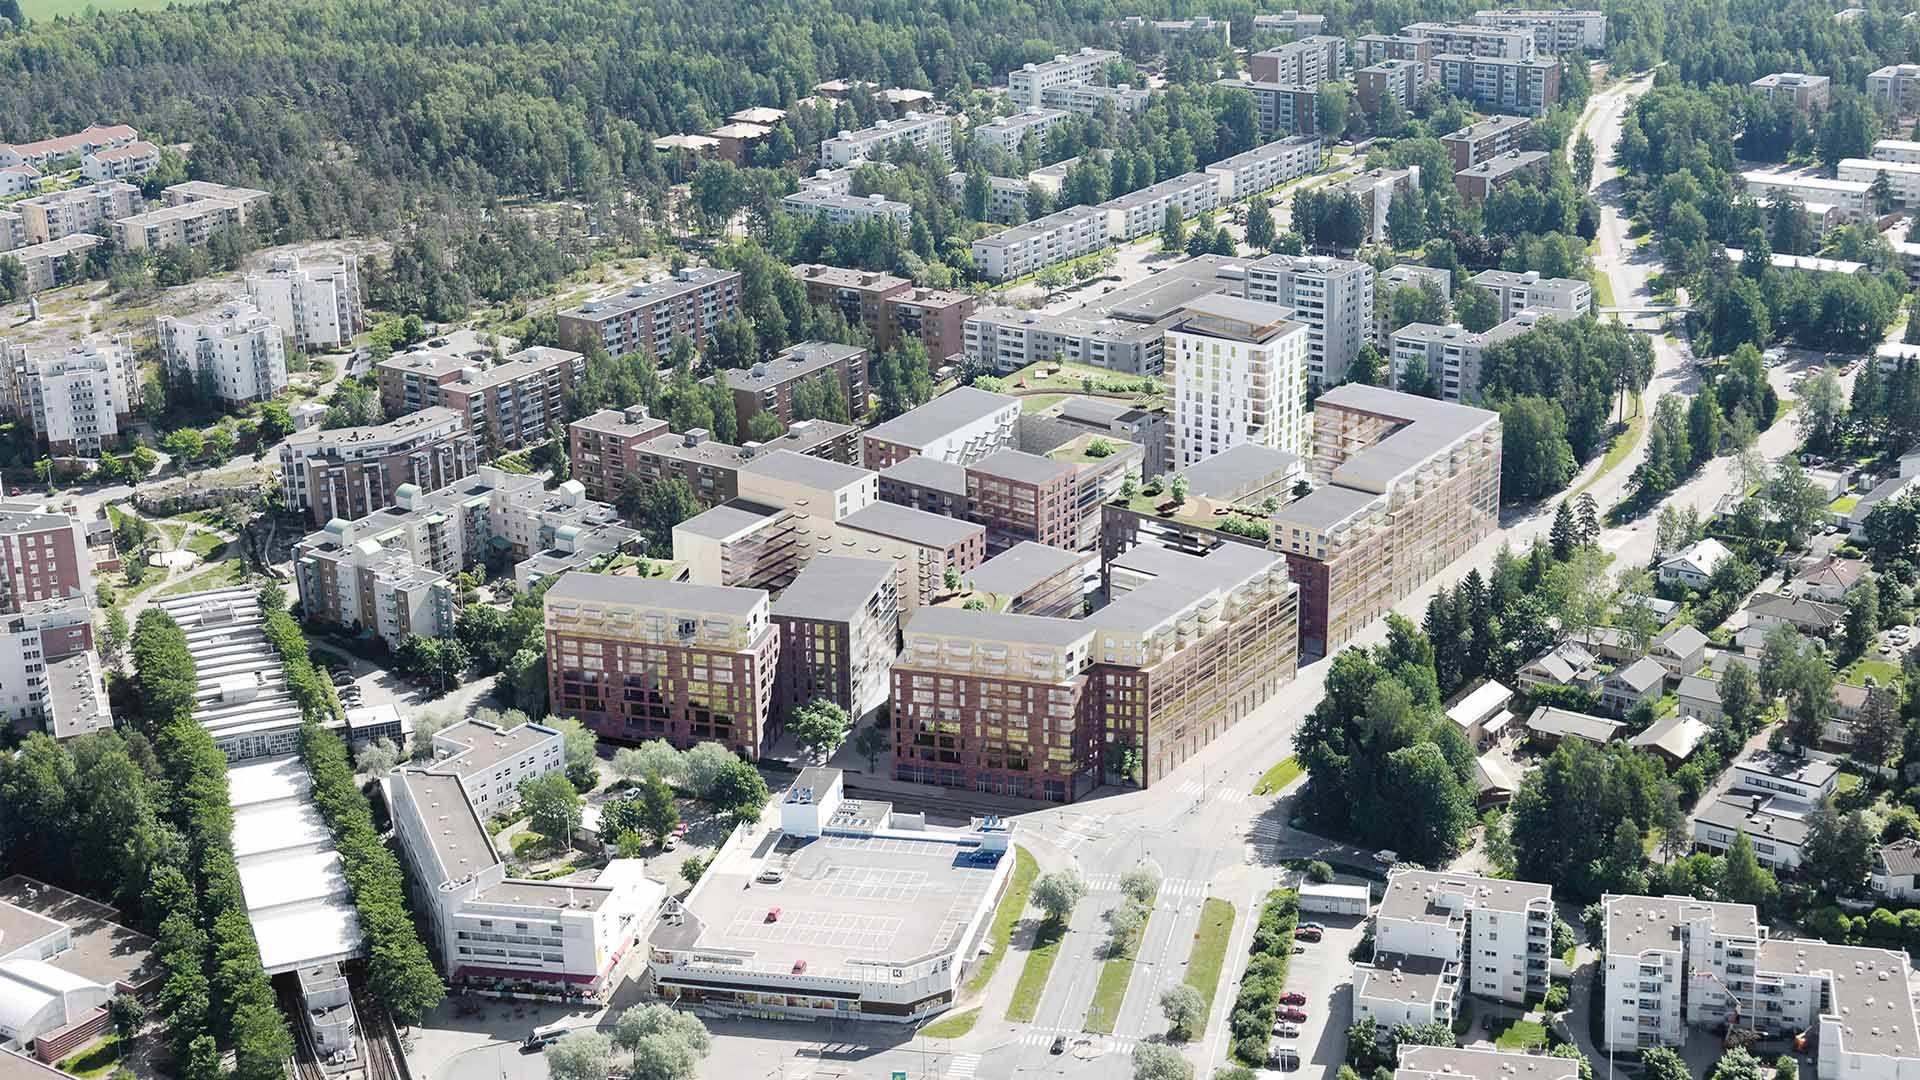  Taloyhtiöt uudistavat korttelin Mellunmäessä – Suomen suurin purkavan täydennysrakentamisen hanke lähdössä käyntiin 